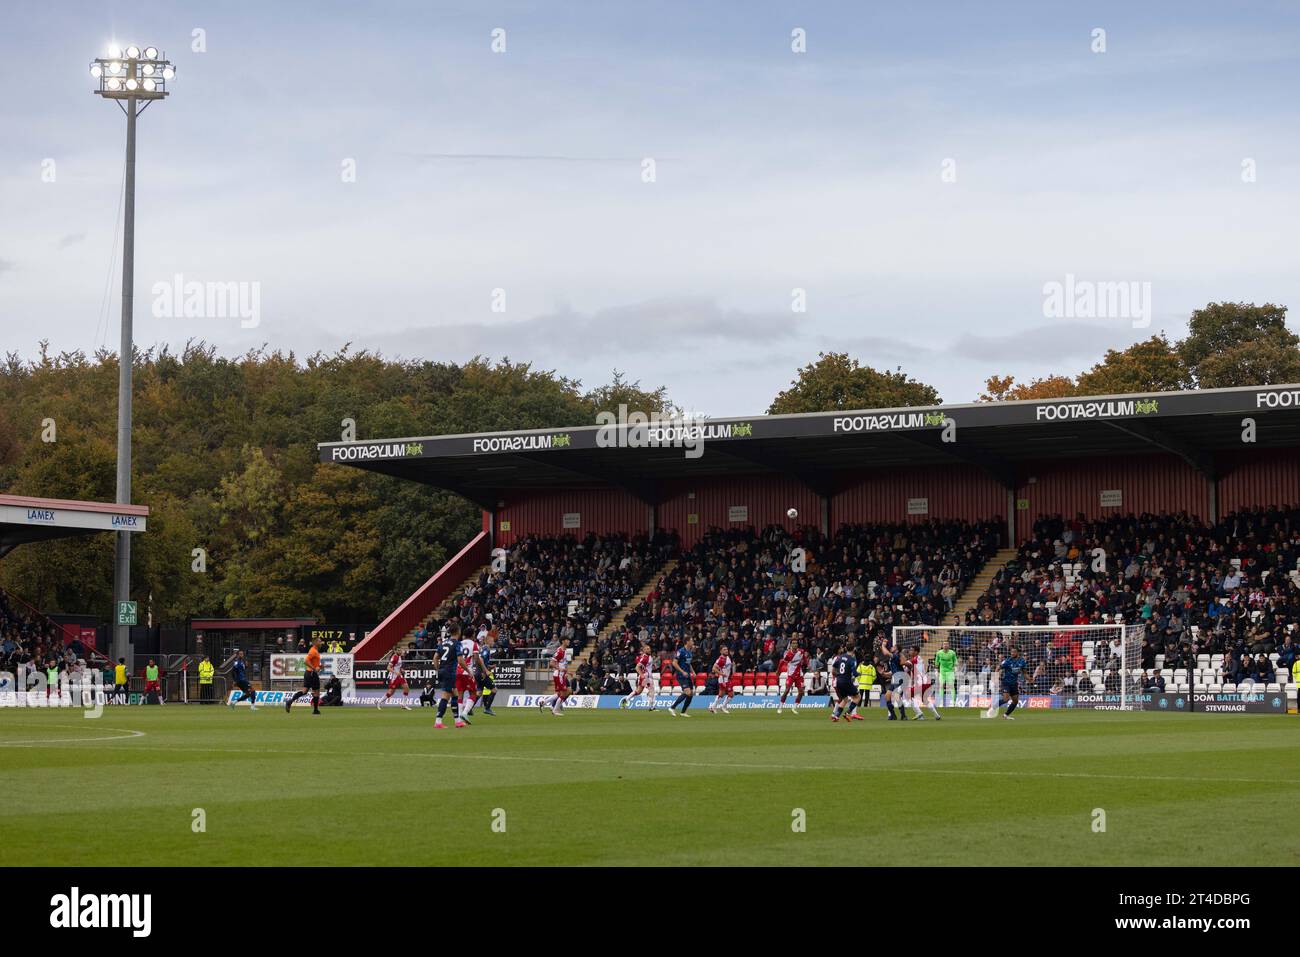 Allgemeiner Blick auf den Nordstand des Stevenage Football Club, das Lamex Stadium während des Spiels mit Fans Stockfoto